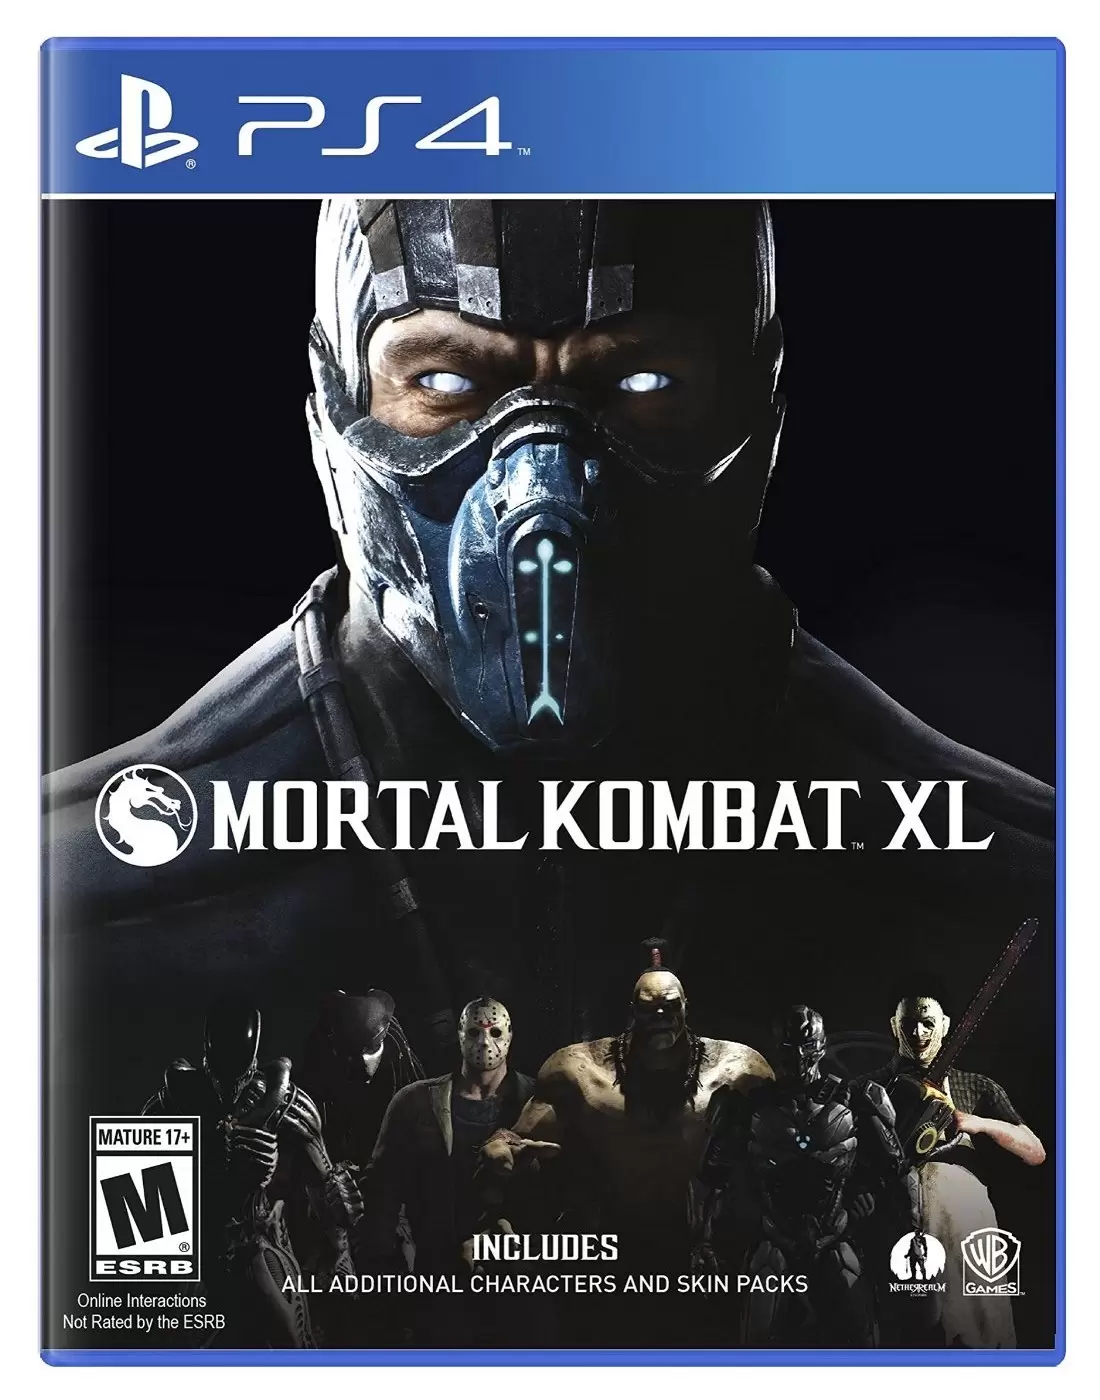 PS4 Games - Mortal Kombat XL